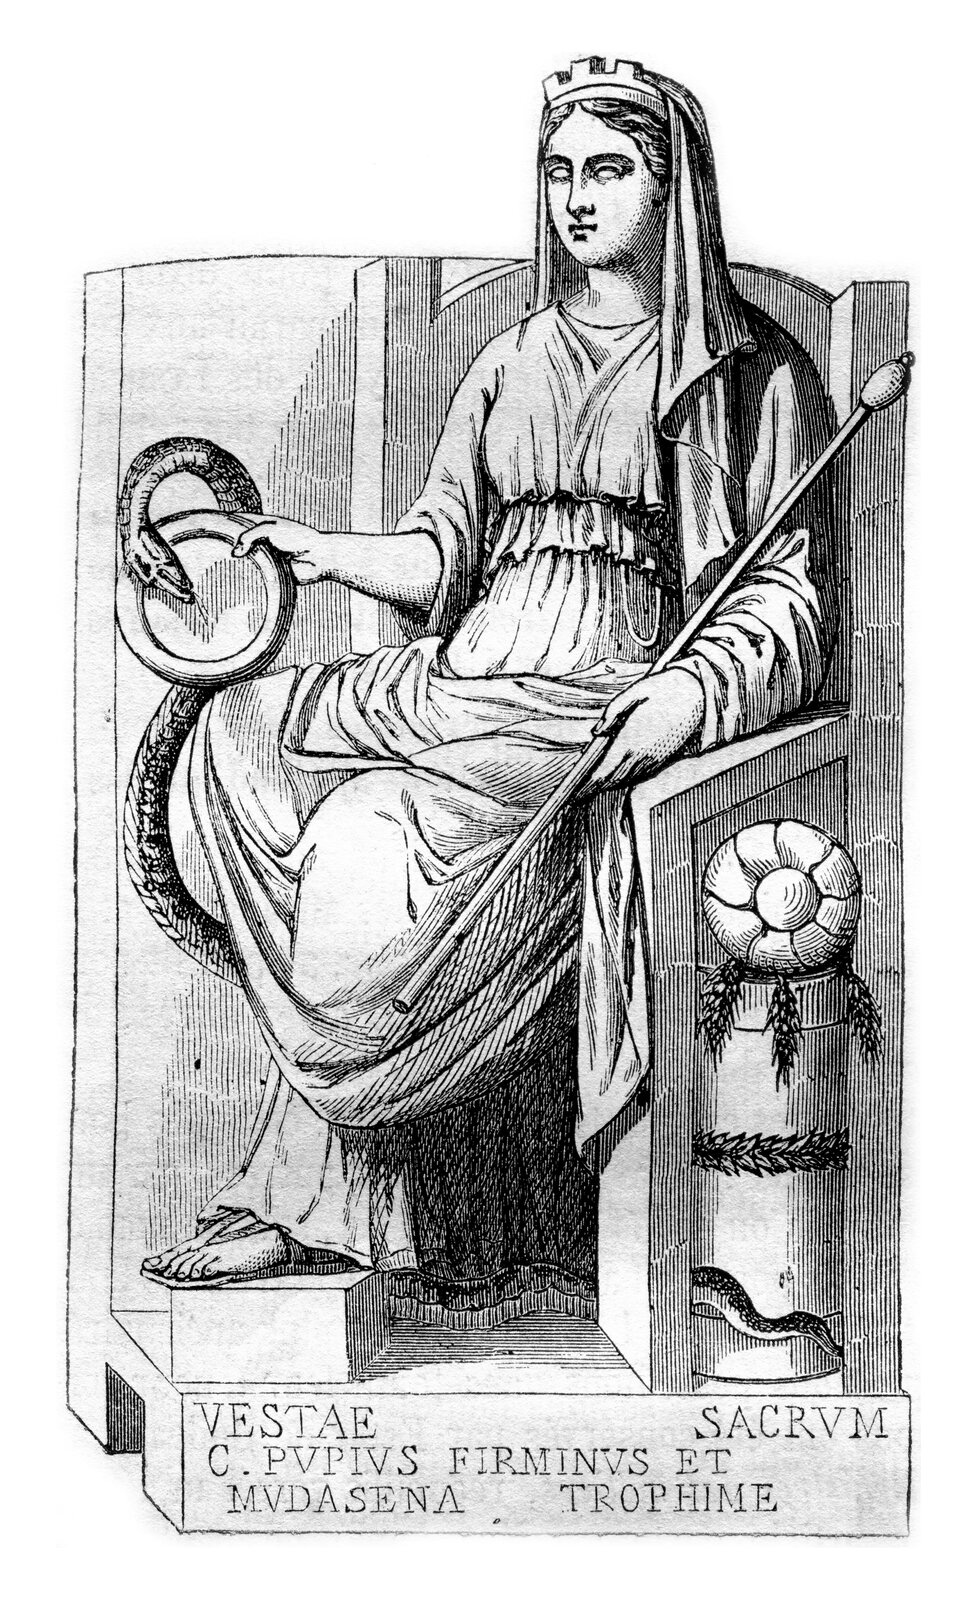 Czarno-biała ilustracja przedstawia Westę siedzącą na tronie. Kobieta ma na głowie welon skrywający jej włosy. Ubrana jest w długą suknię sięgającą do ziemi. Kobieta w dłoniach trzyma swoje atrybuty: węża i włócznię. 